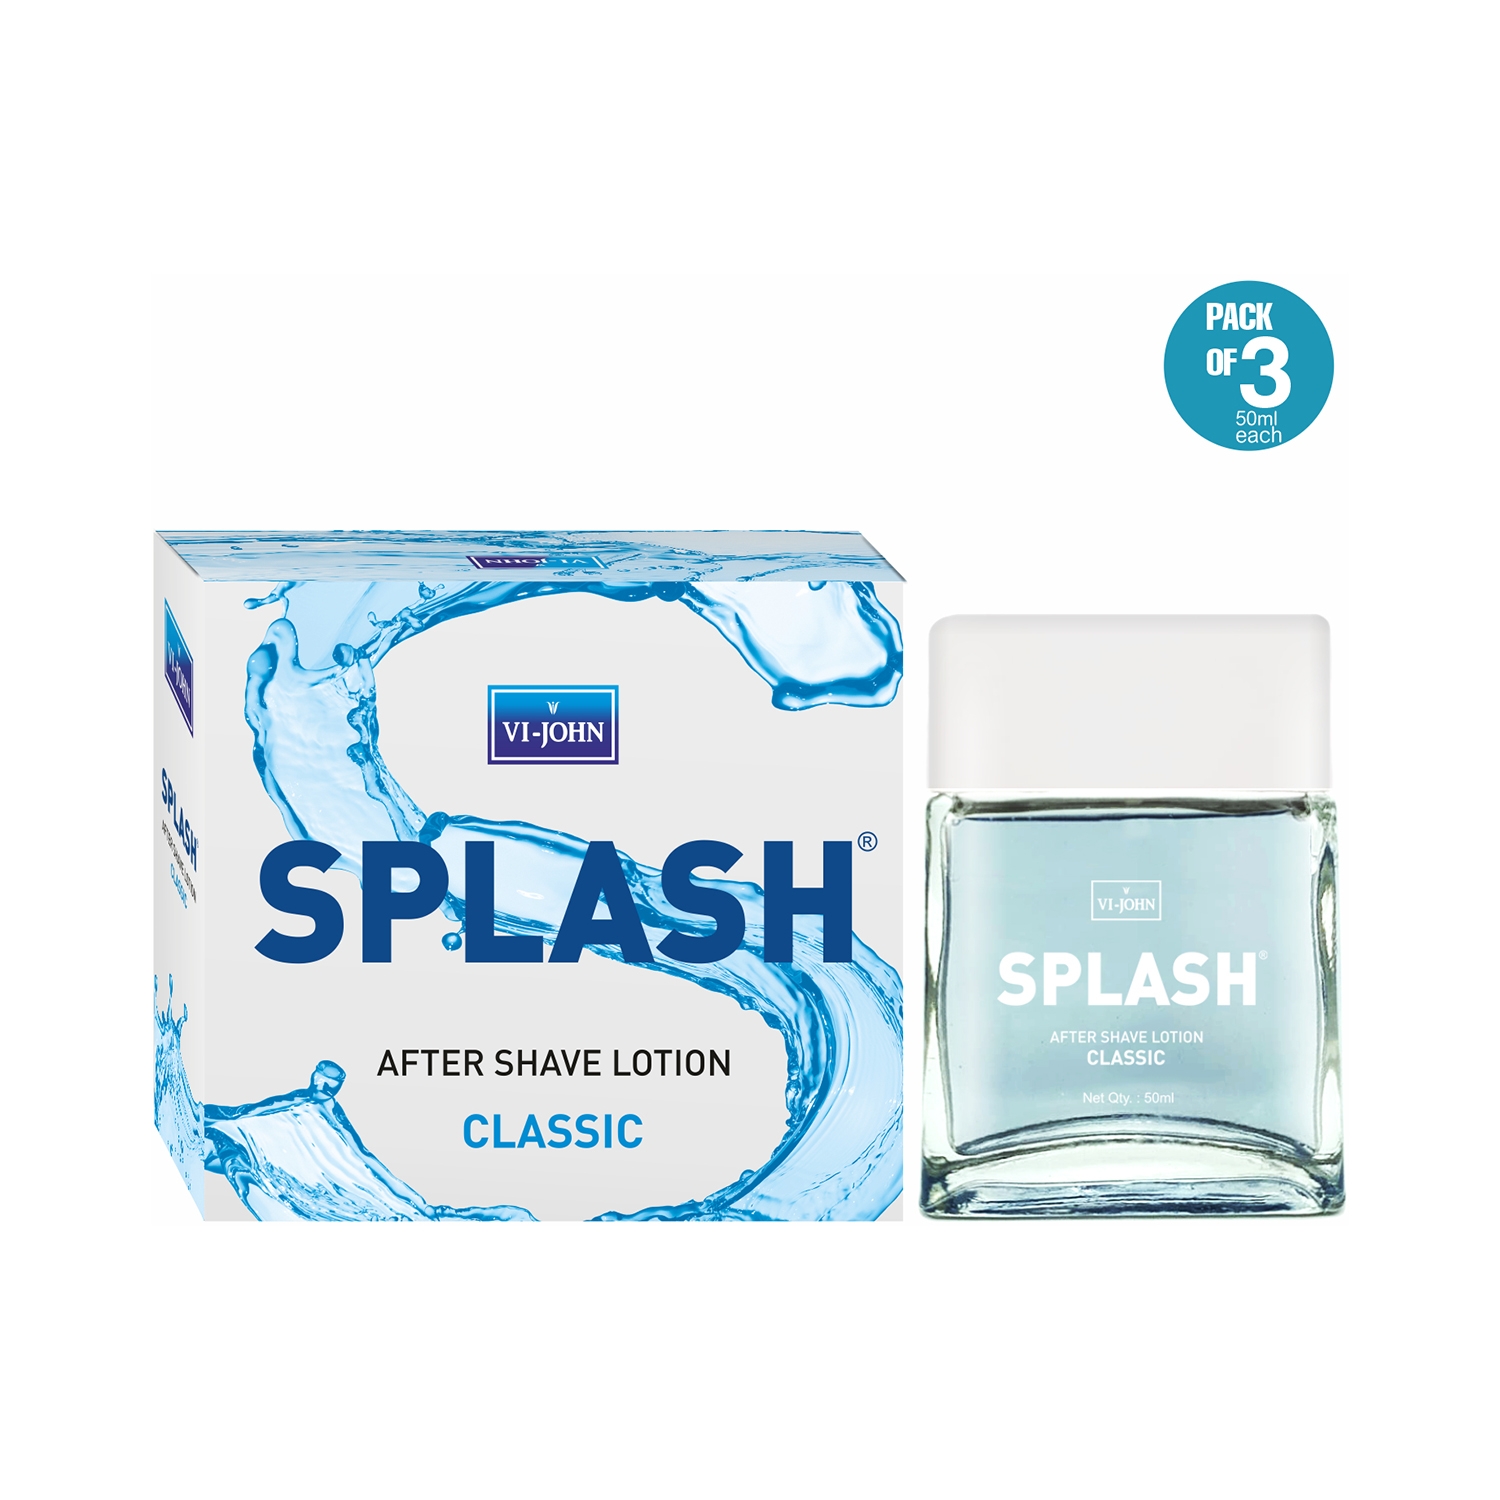 VI-JOHN | VI-JOHN Splash Classic After Shave Lotion (Pack of 3)